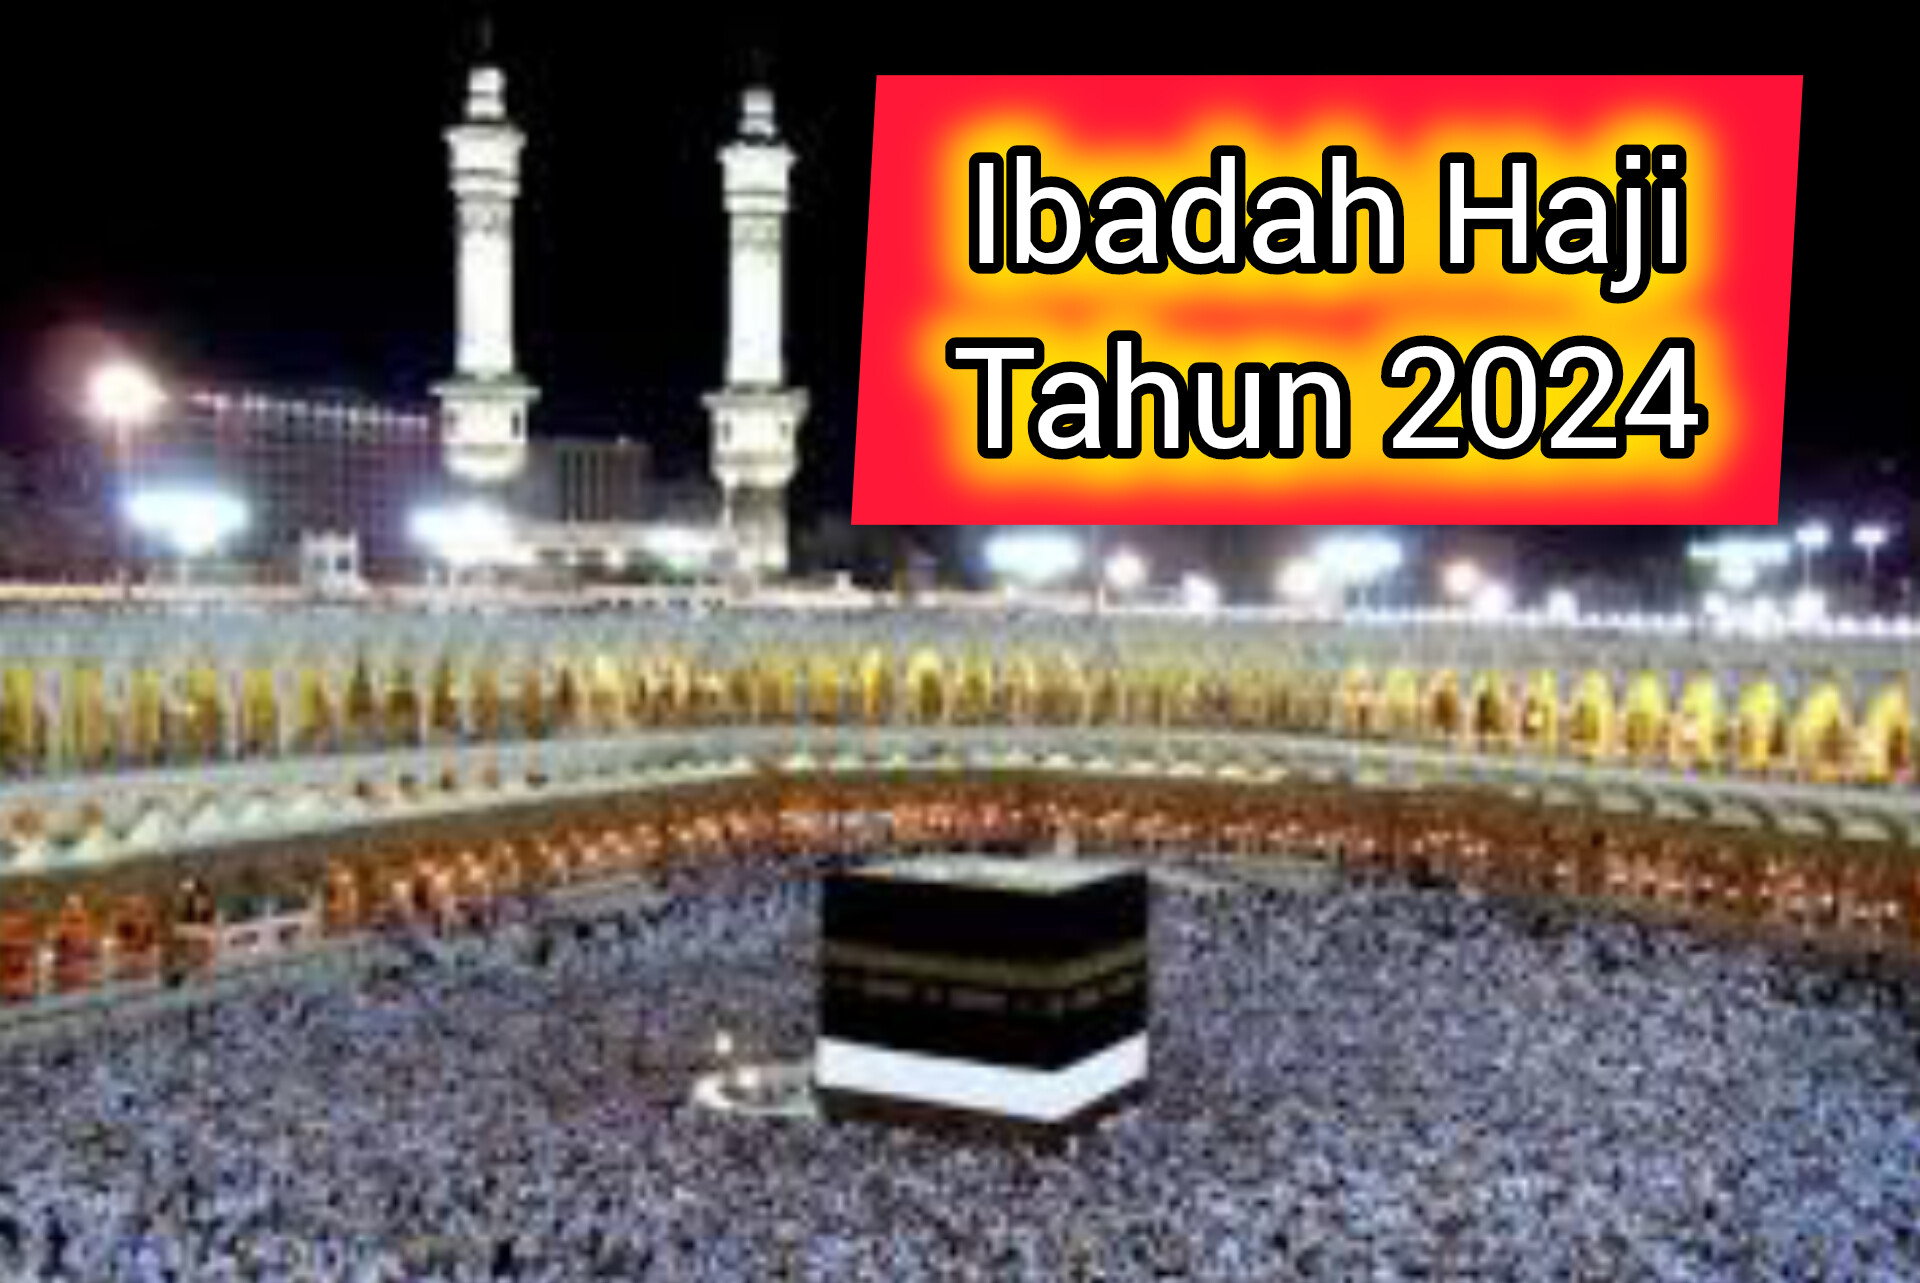 Tiba di Makkah, Jamaah Calon Haji Mulai Melakukan Aktivitas Rangkaian Ibadah Umrah Wajib